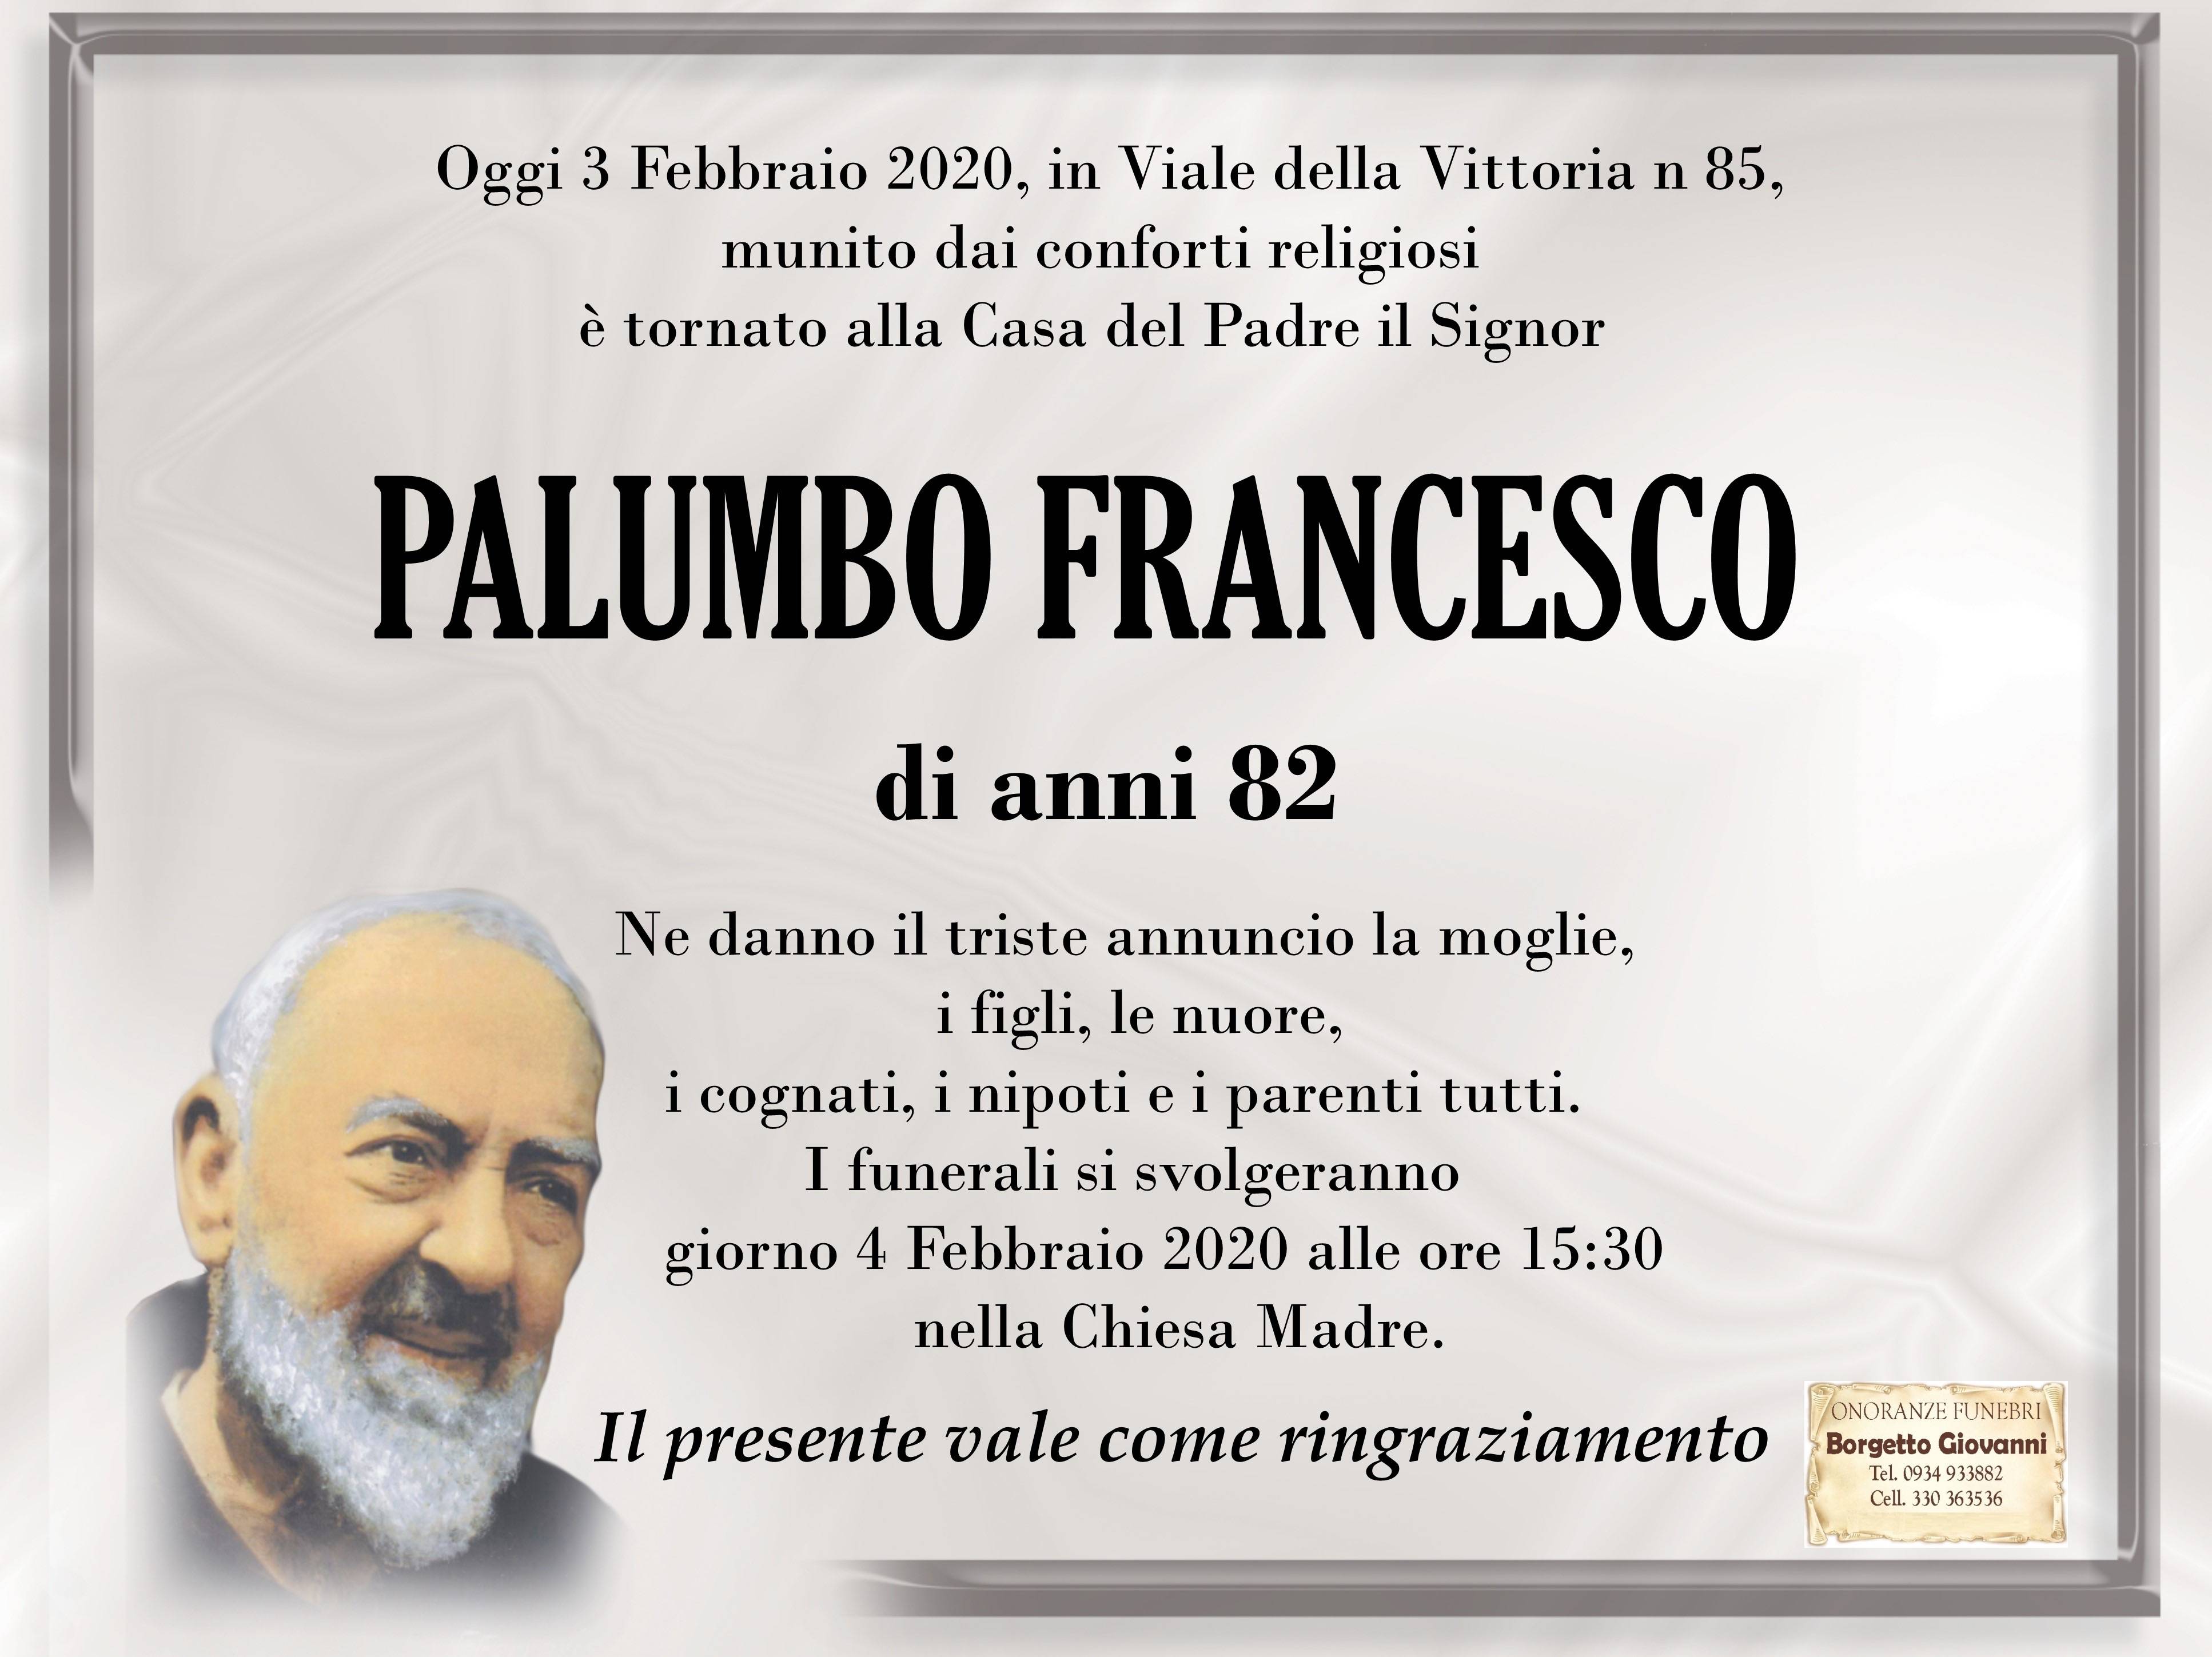 Francesco Palumbo